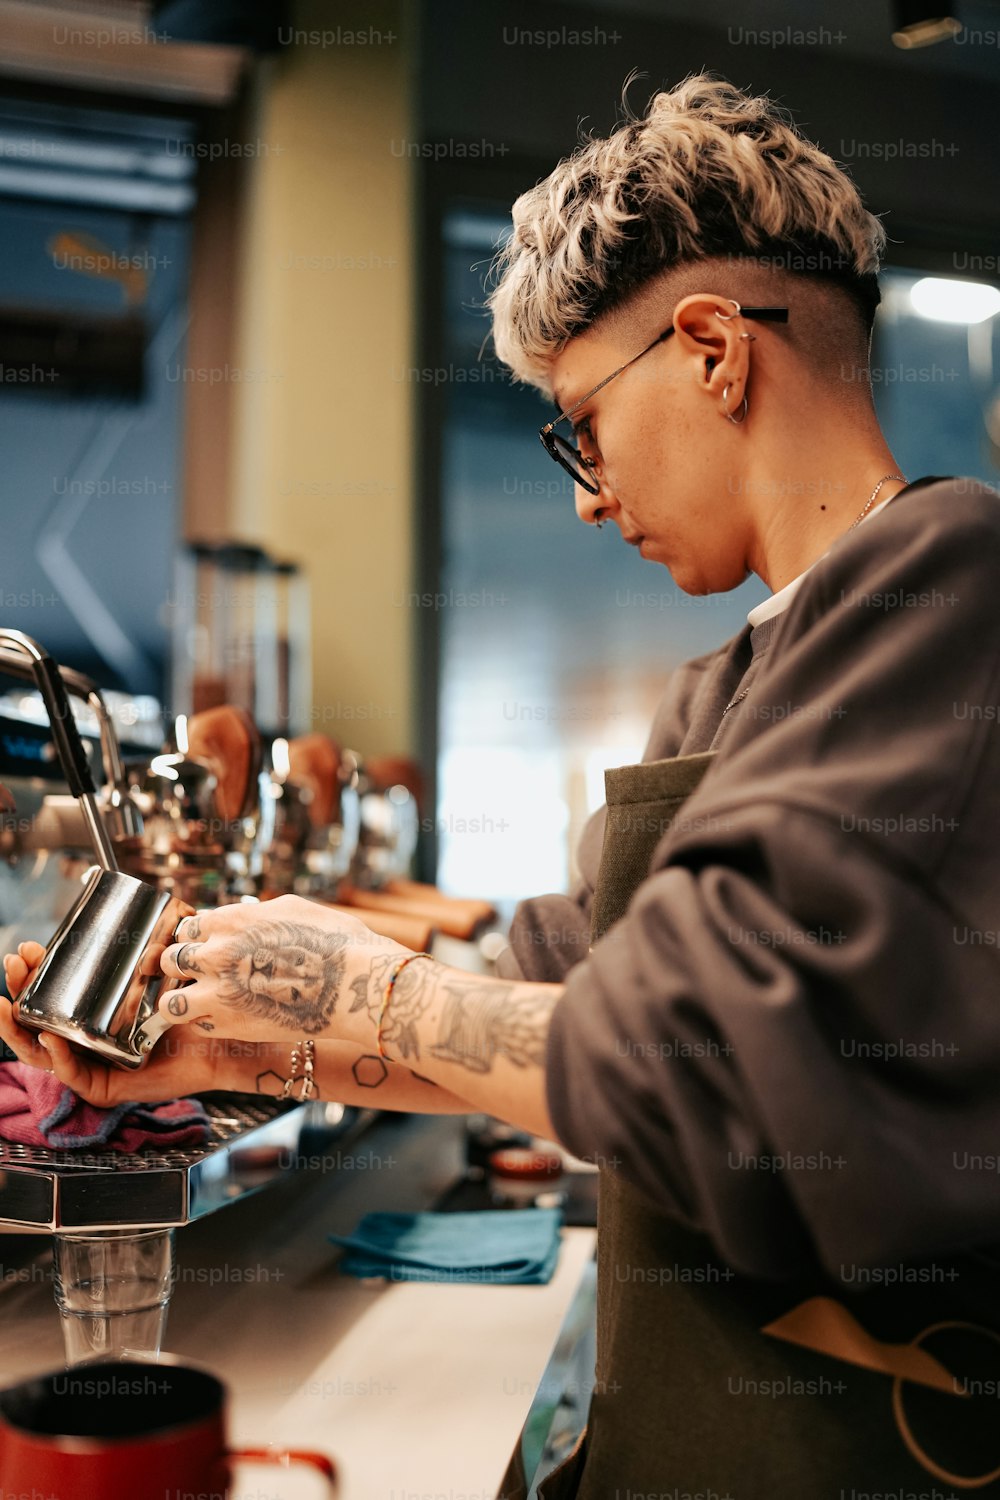 Una donna con un tatuaggio sul braccio sta riempiendo una tazza di caffè